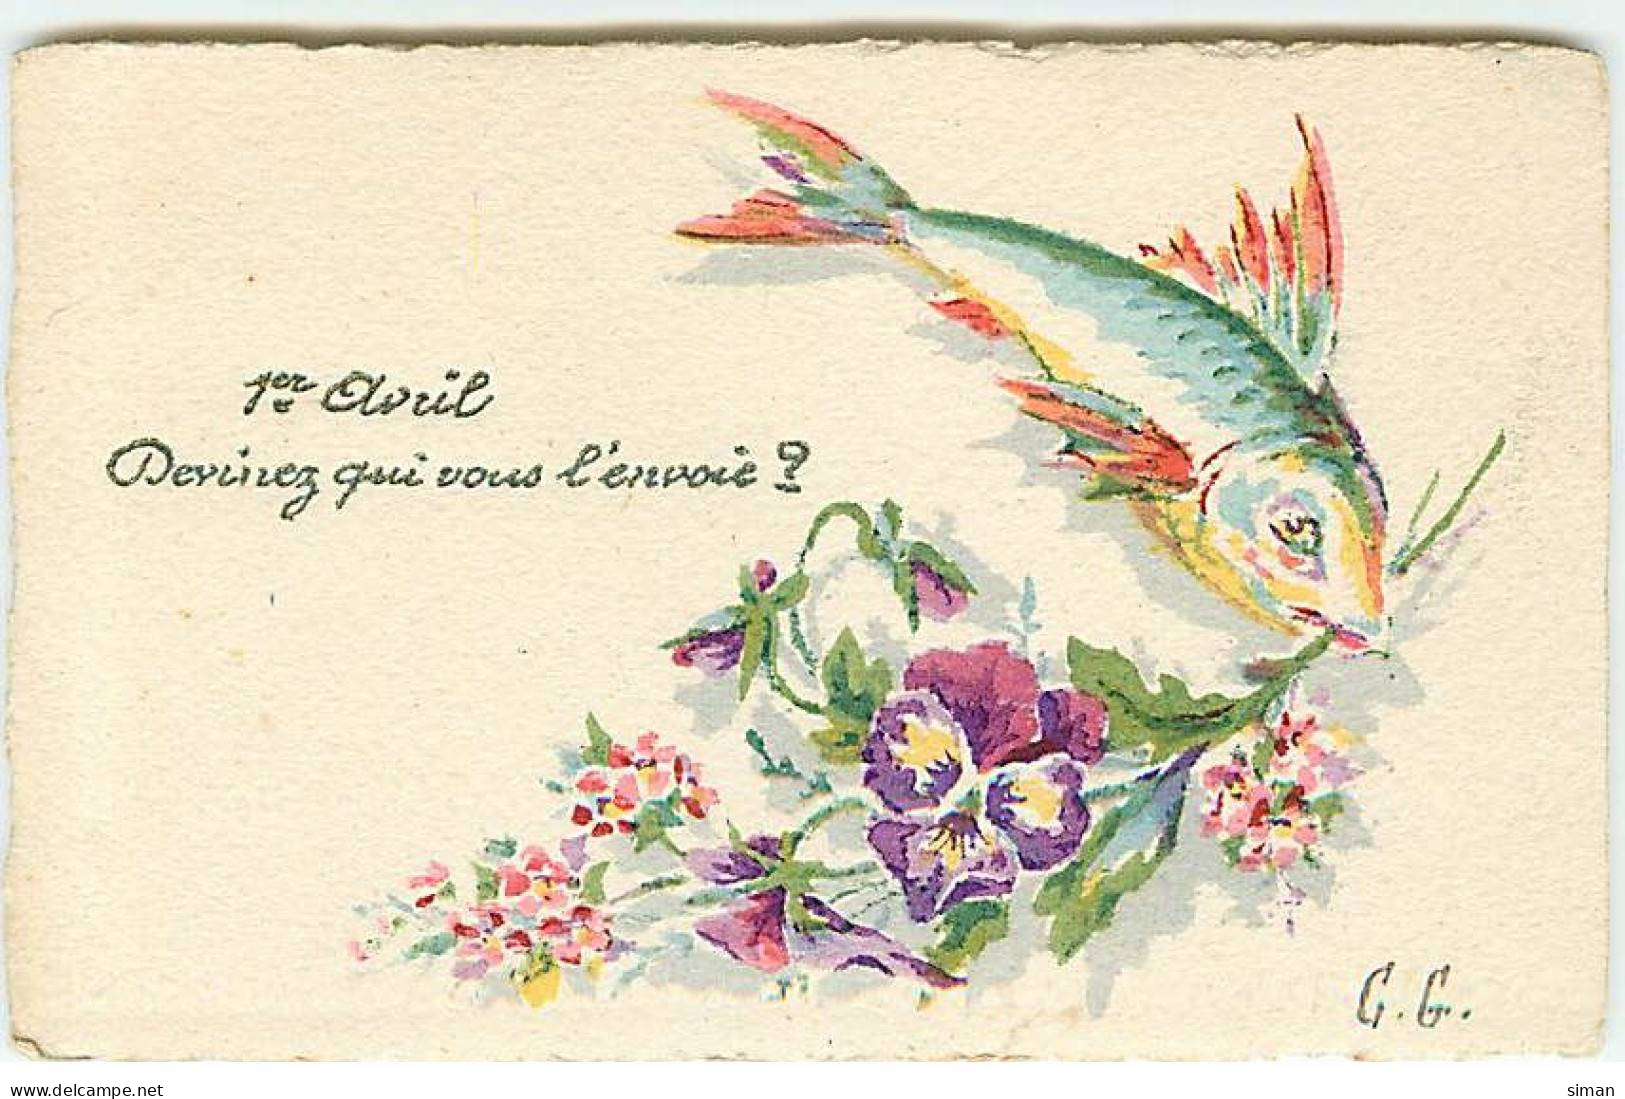 N°22921 - 1er Avril - Devinez Qui Vous L'envoie ? - Poisson Tenant Des Fleurs - Carte Peinte à La Main - April Fool's Day